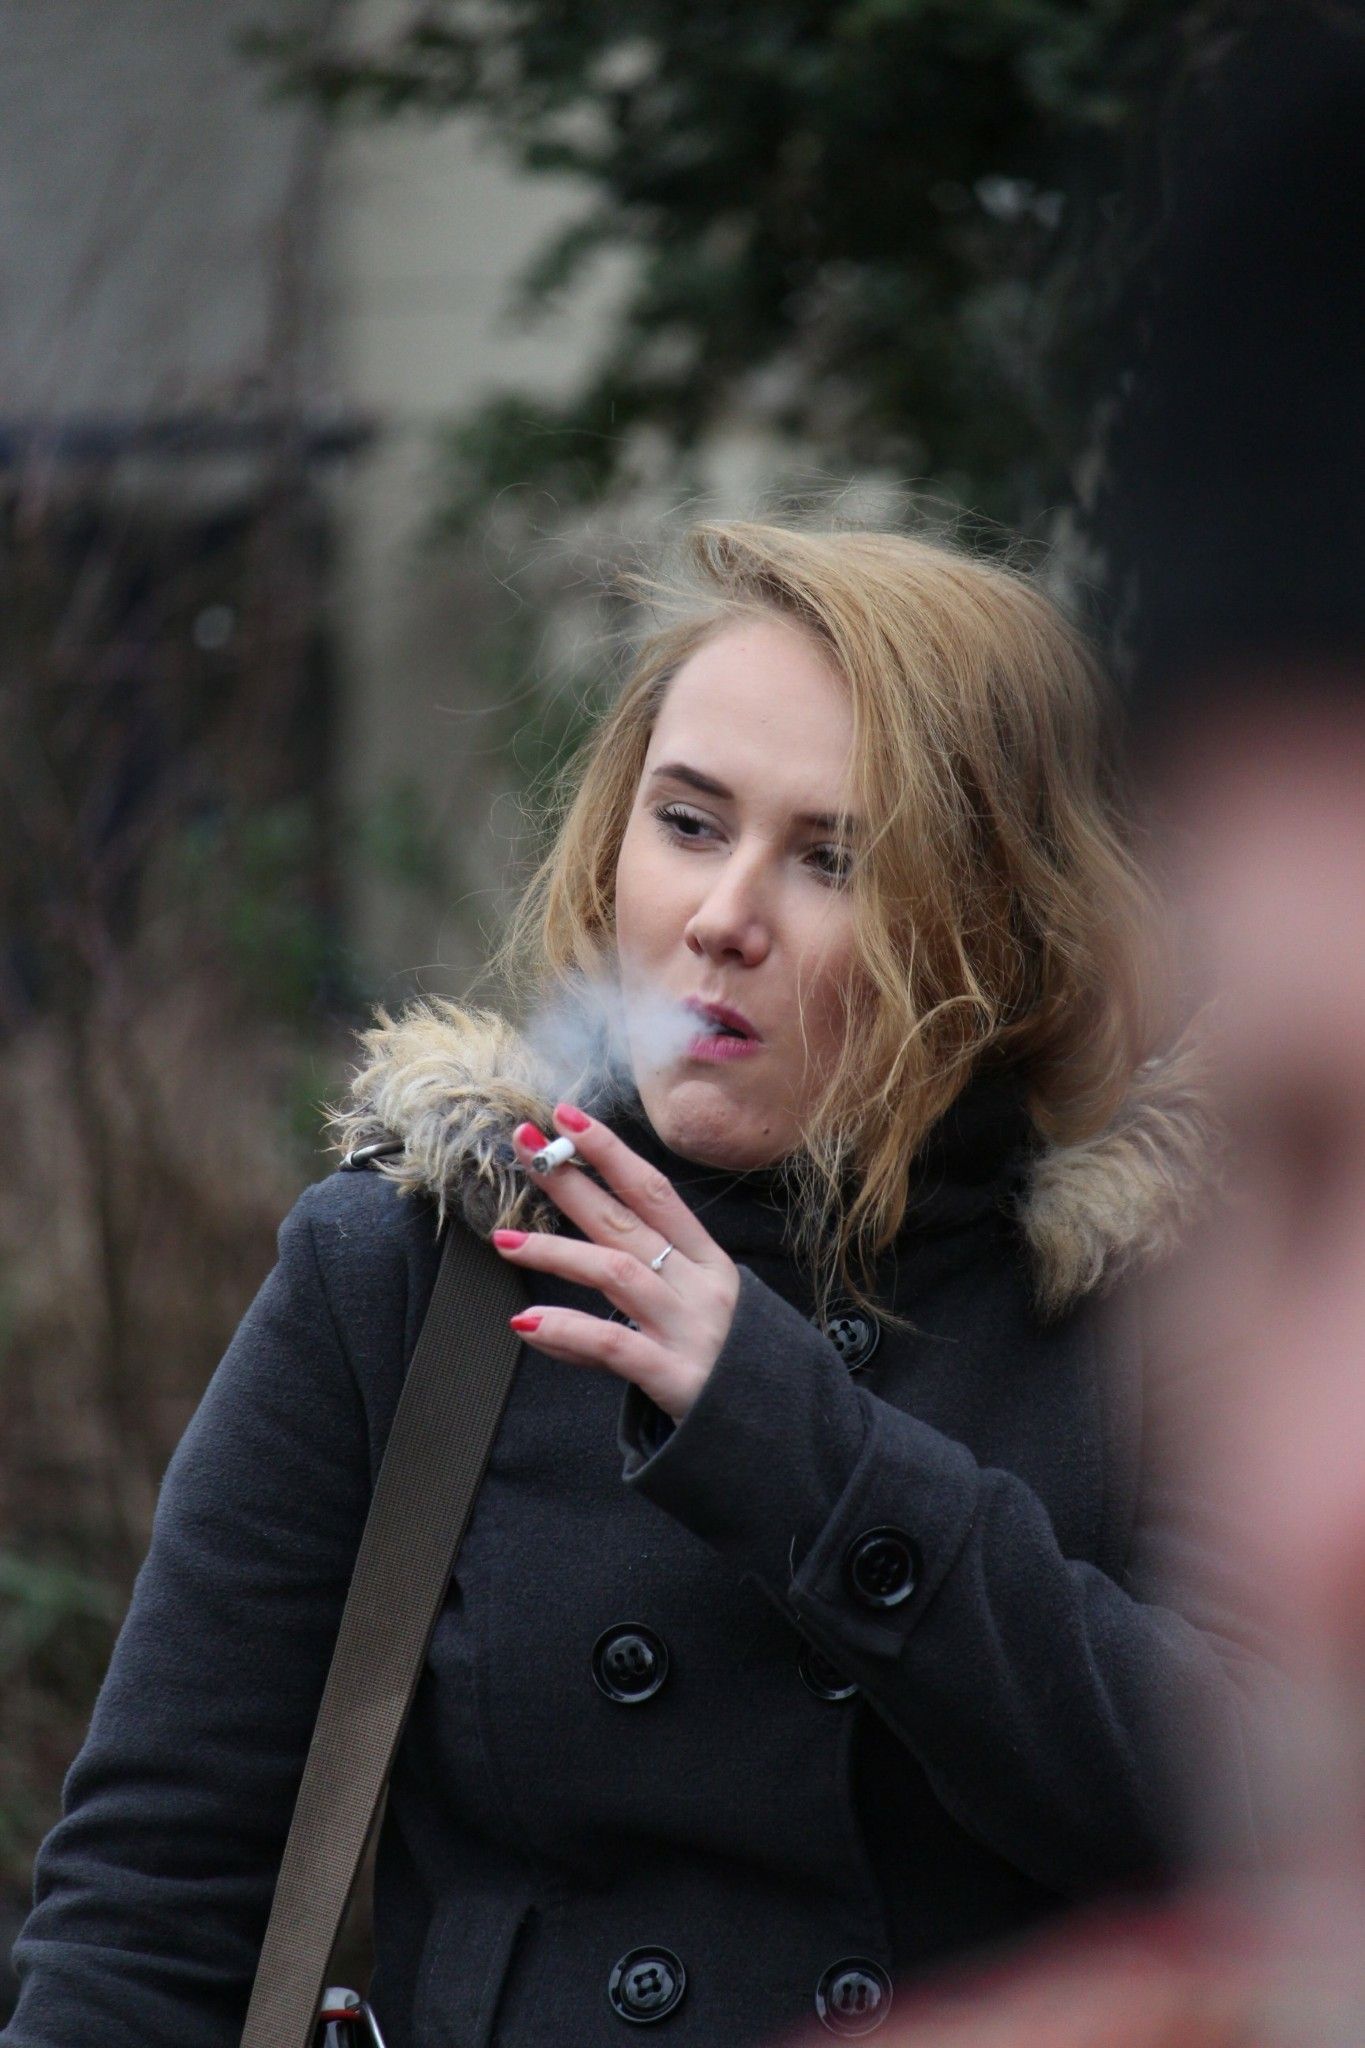 German mature woman smoking